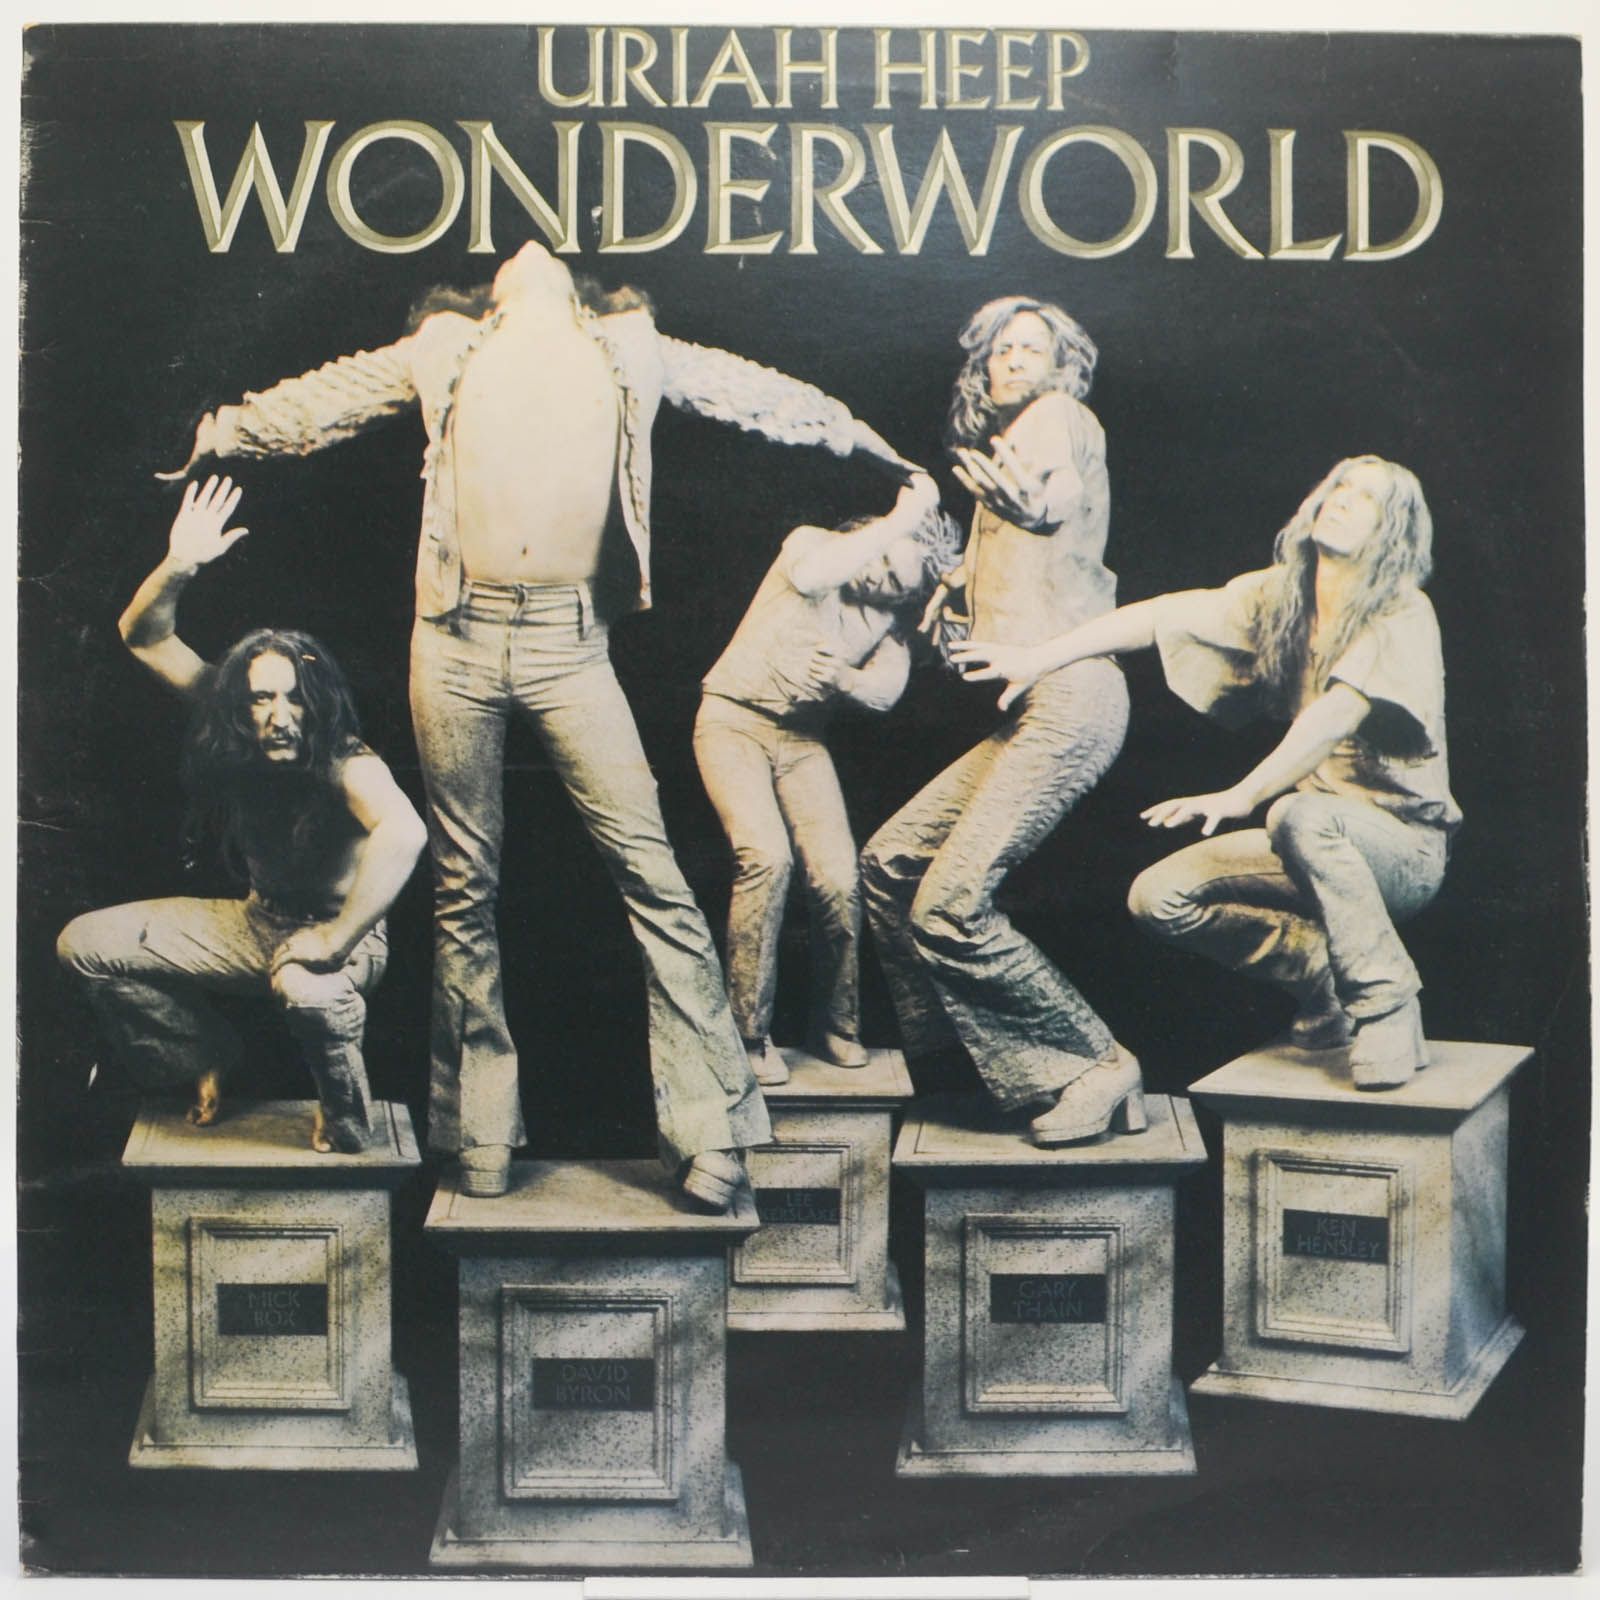 Uriah Heep — Wonderworld (UK), 1974